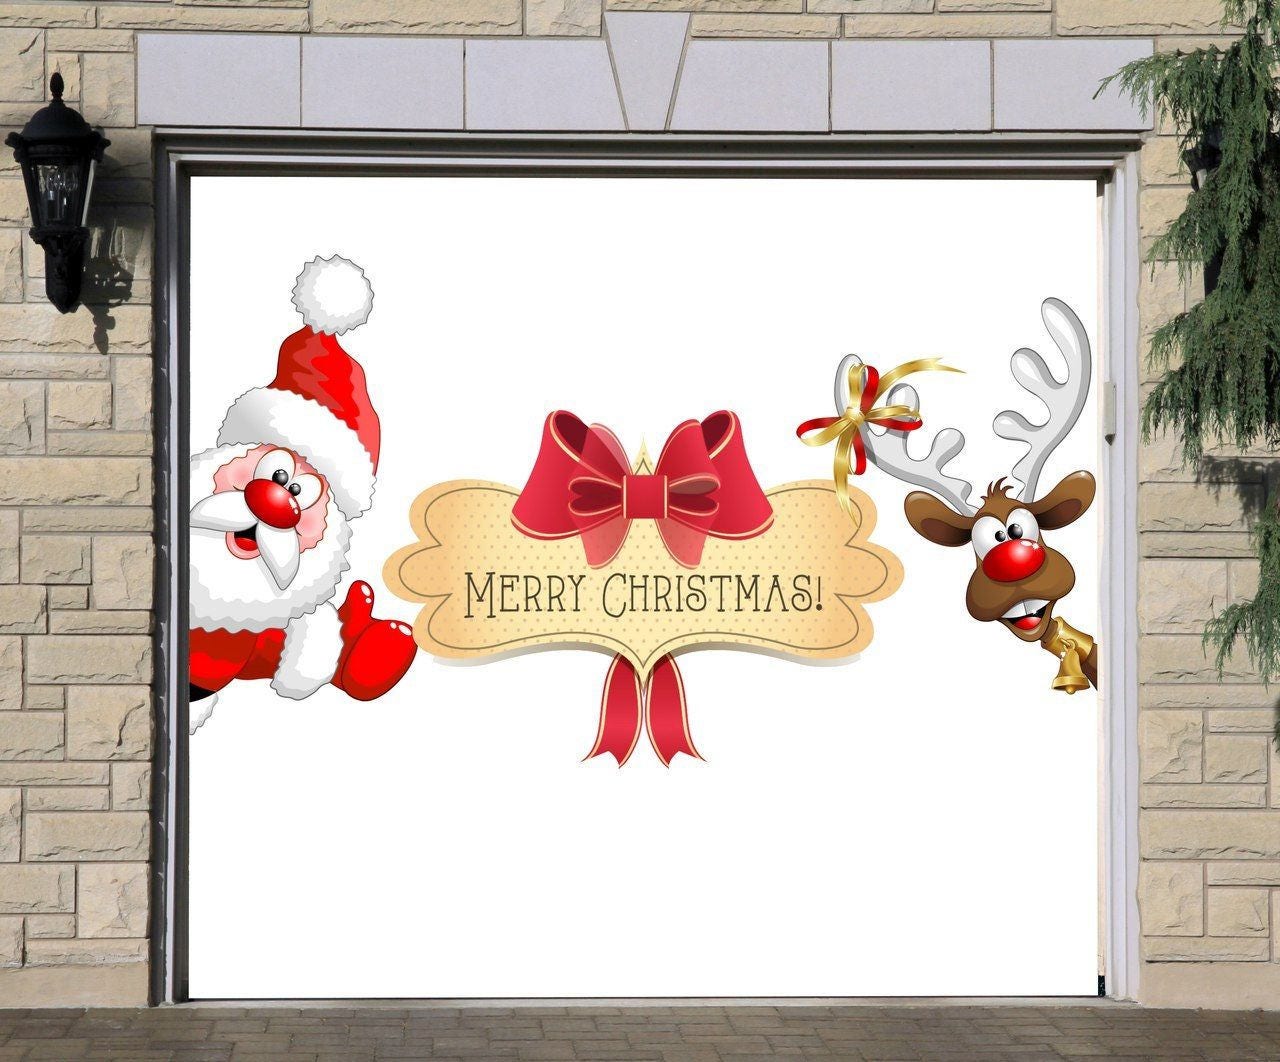 Merry Christmas Sign, Single Garage Door Cover, Full Color Door Murals ...